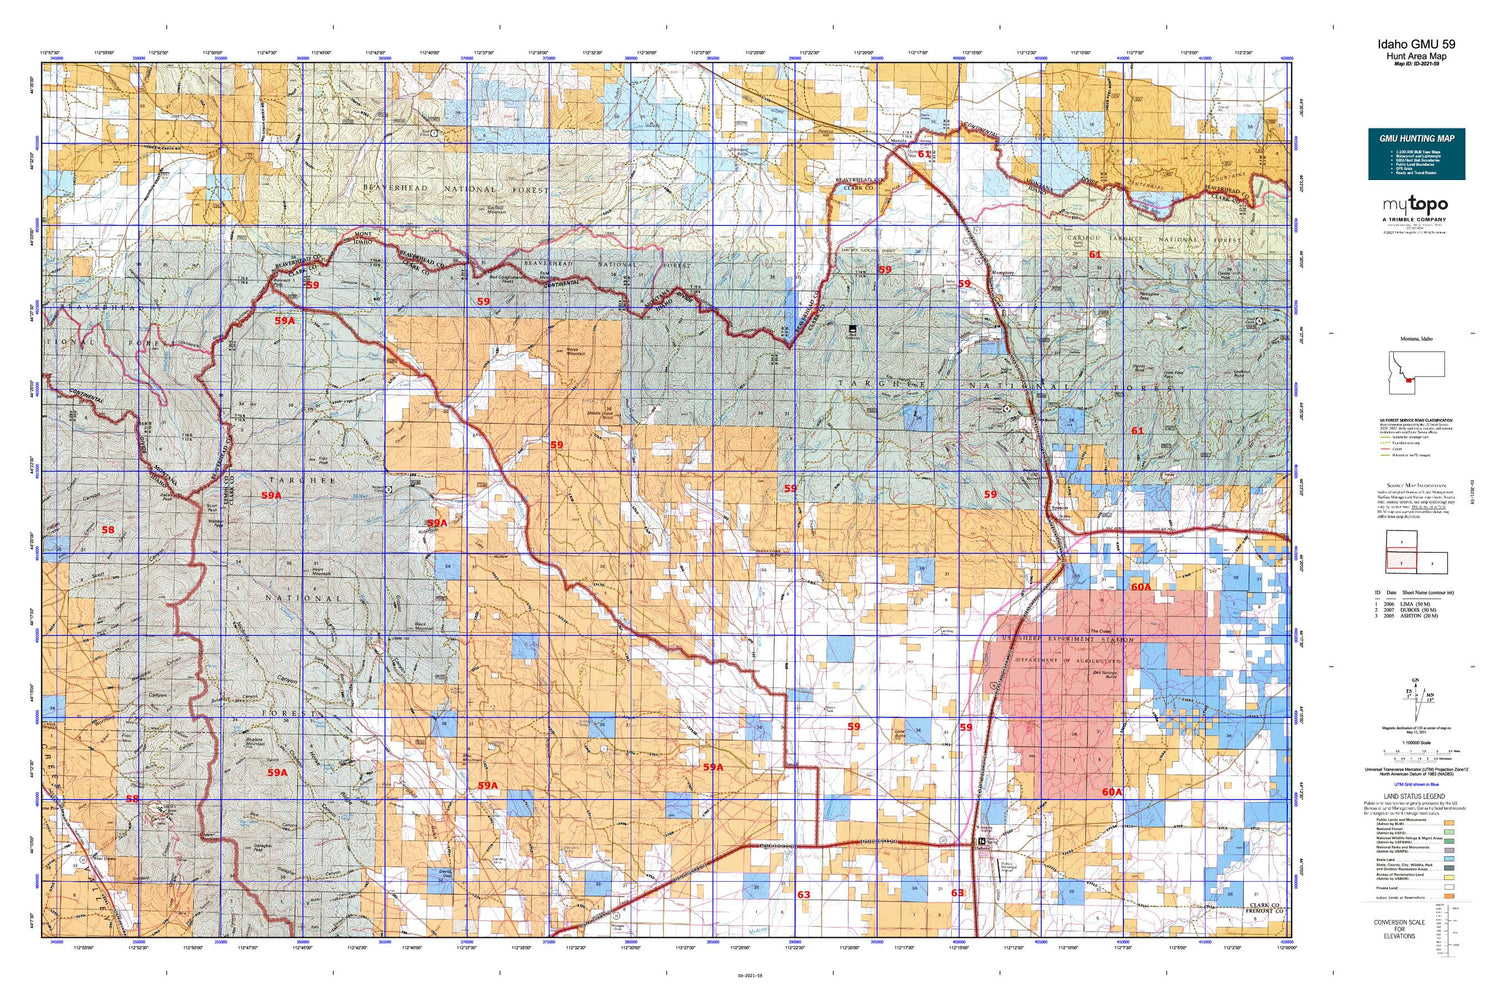 Idaho GMU 59 Map Image